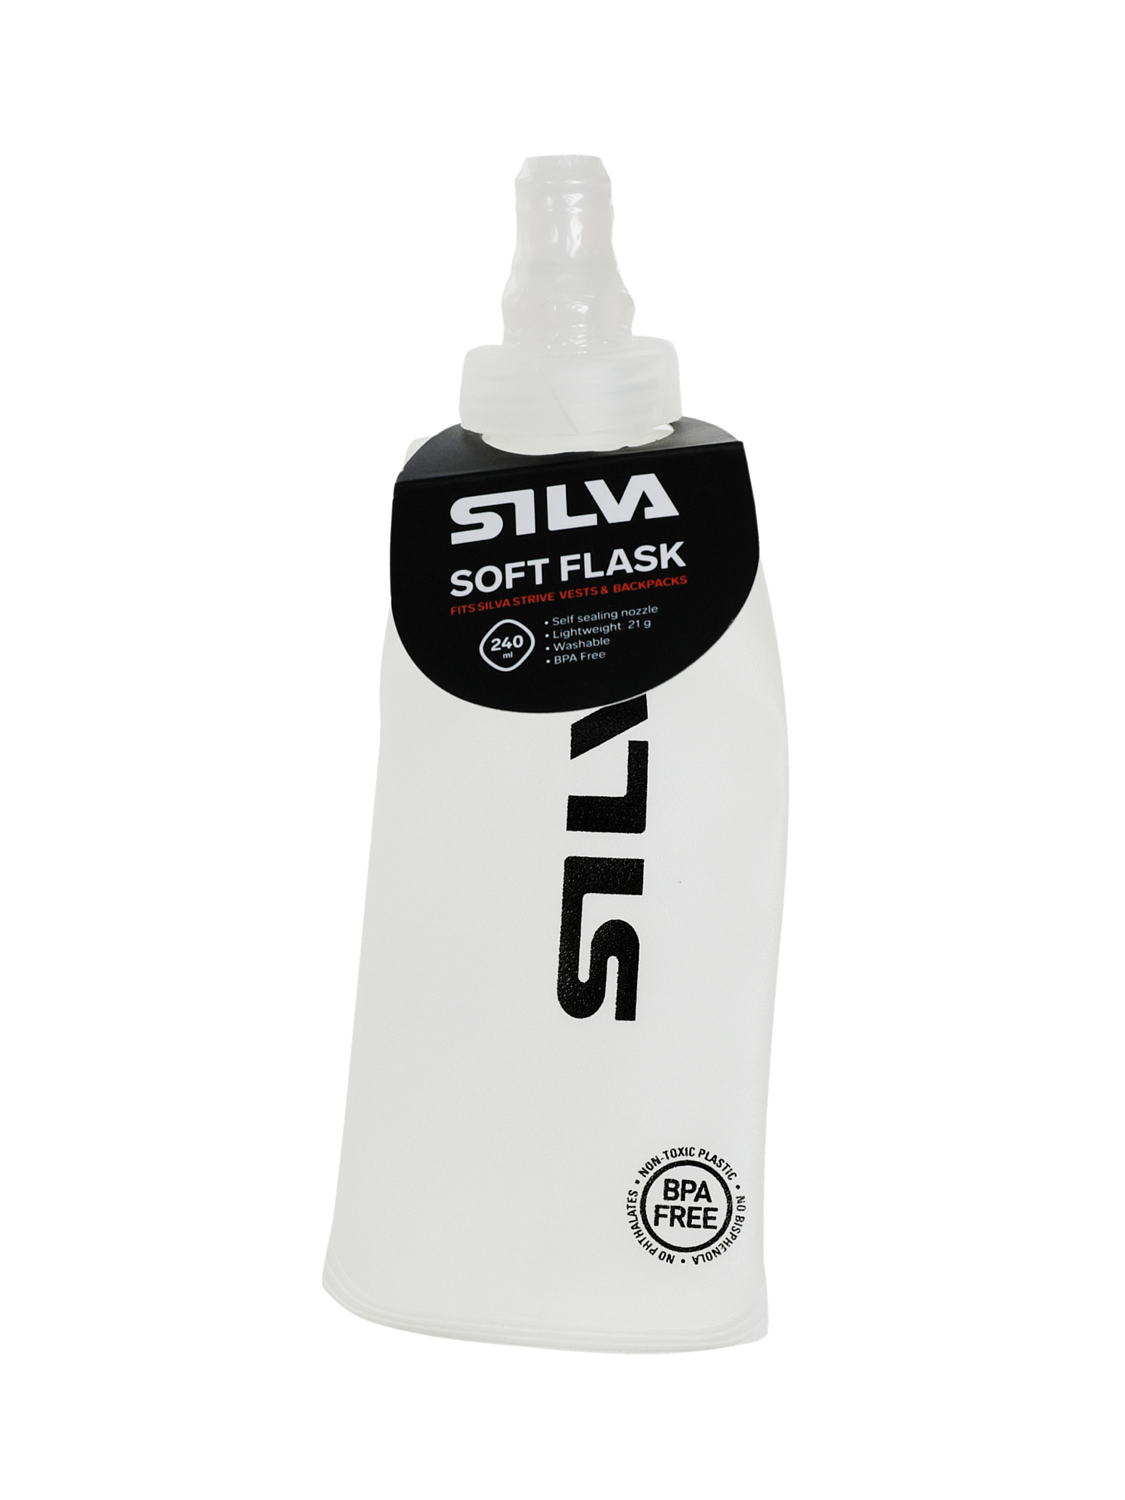 Фляга Silva Soft Flask 240ml